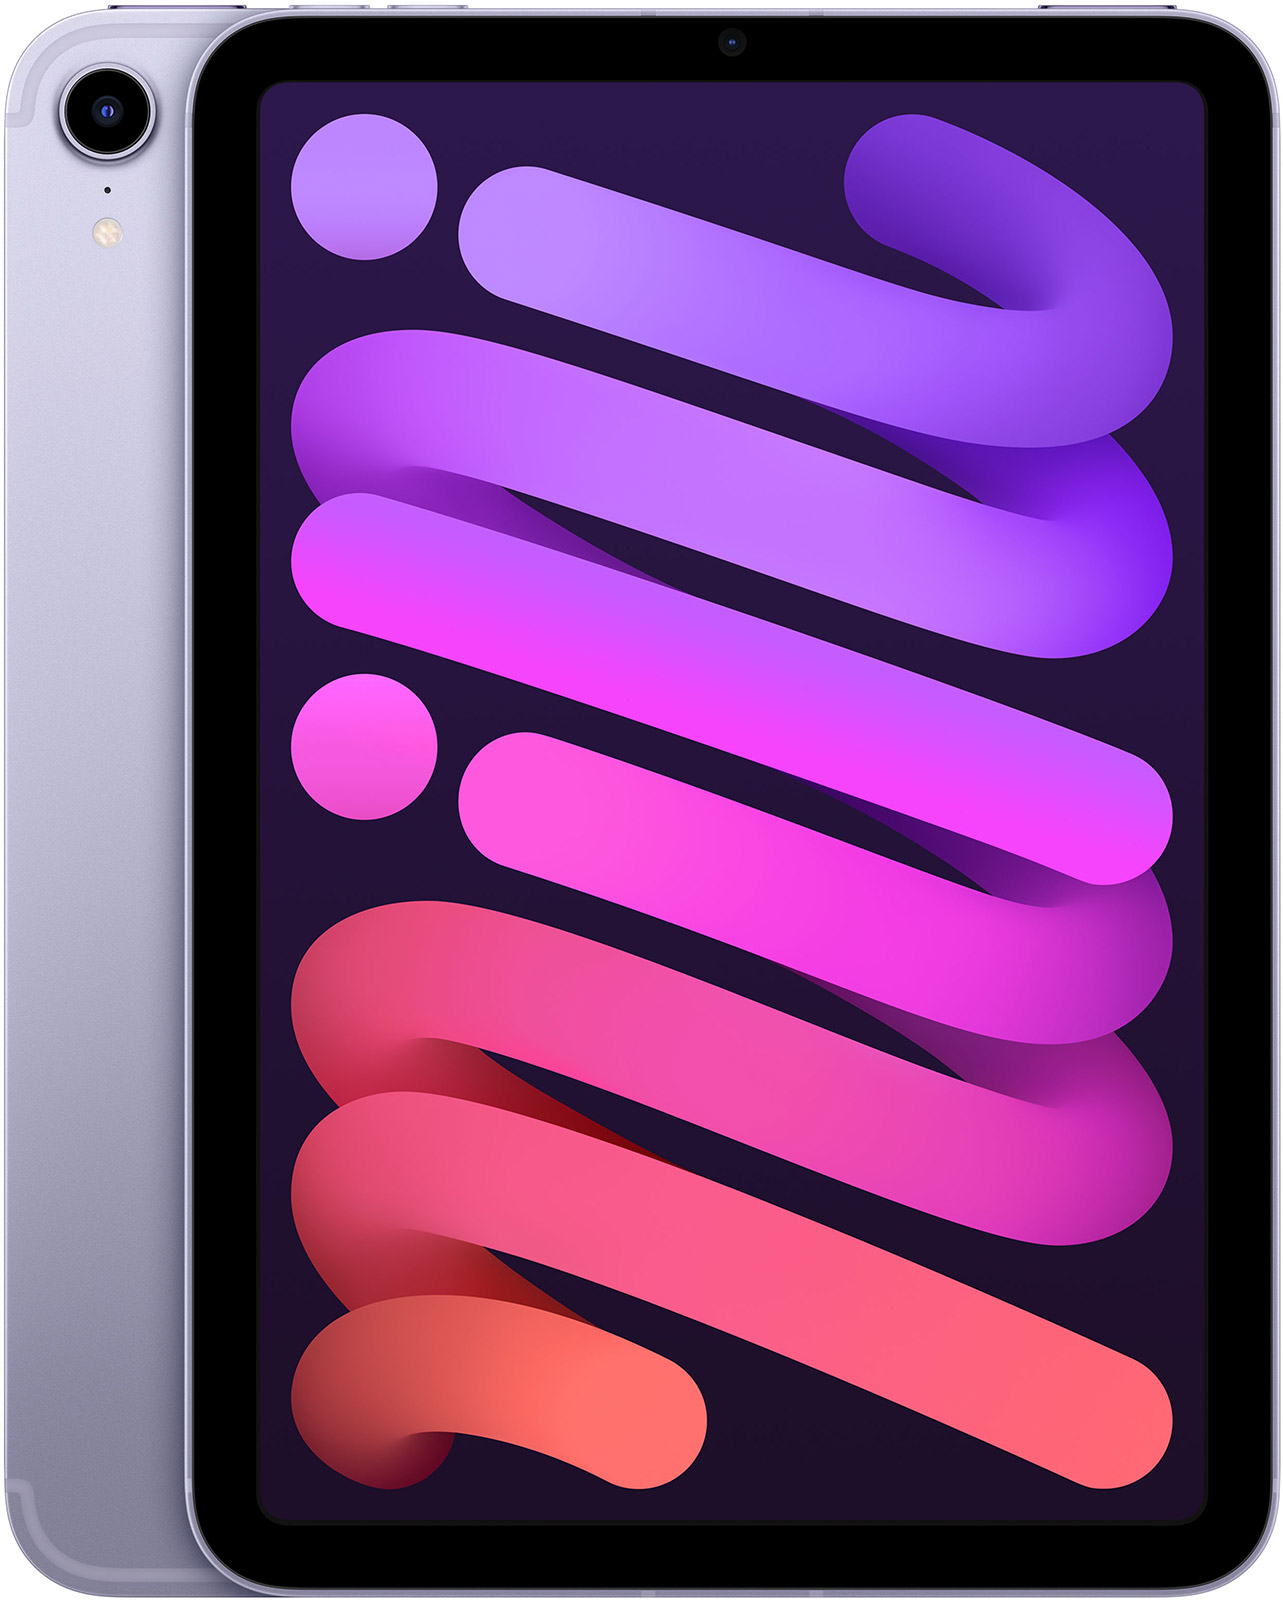 Apple-8-3-iPad-mini-WiFi-Cell-64-GB-Violett-2021-01.jpg